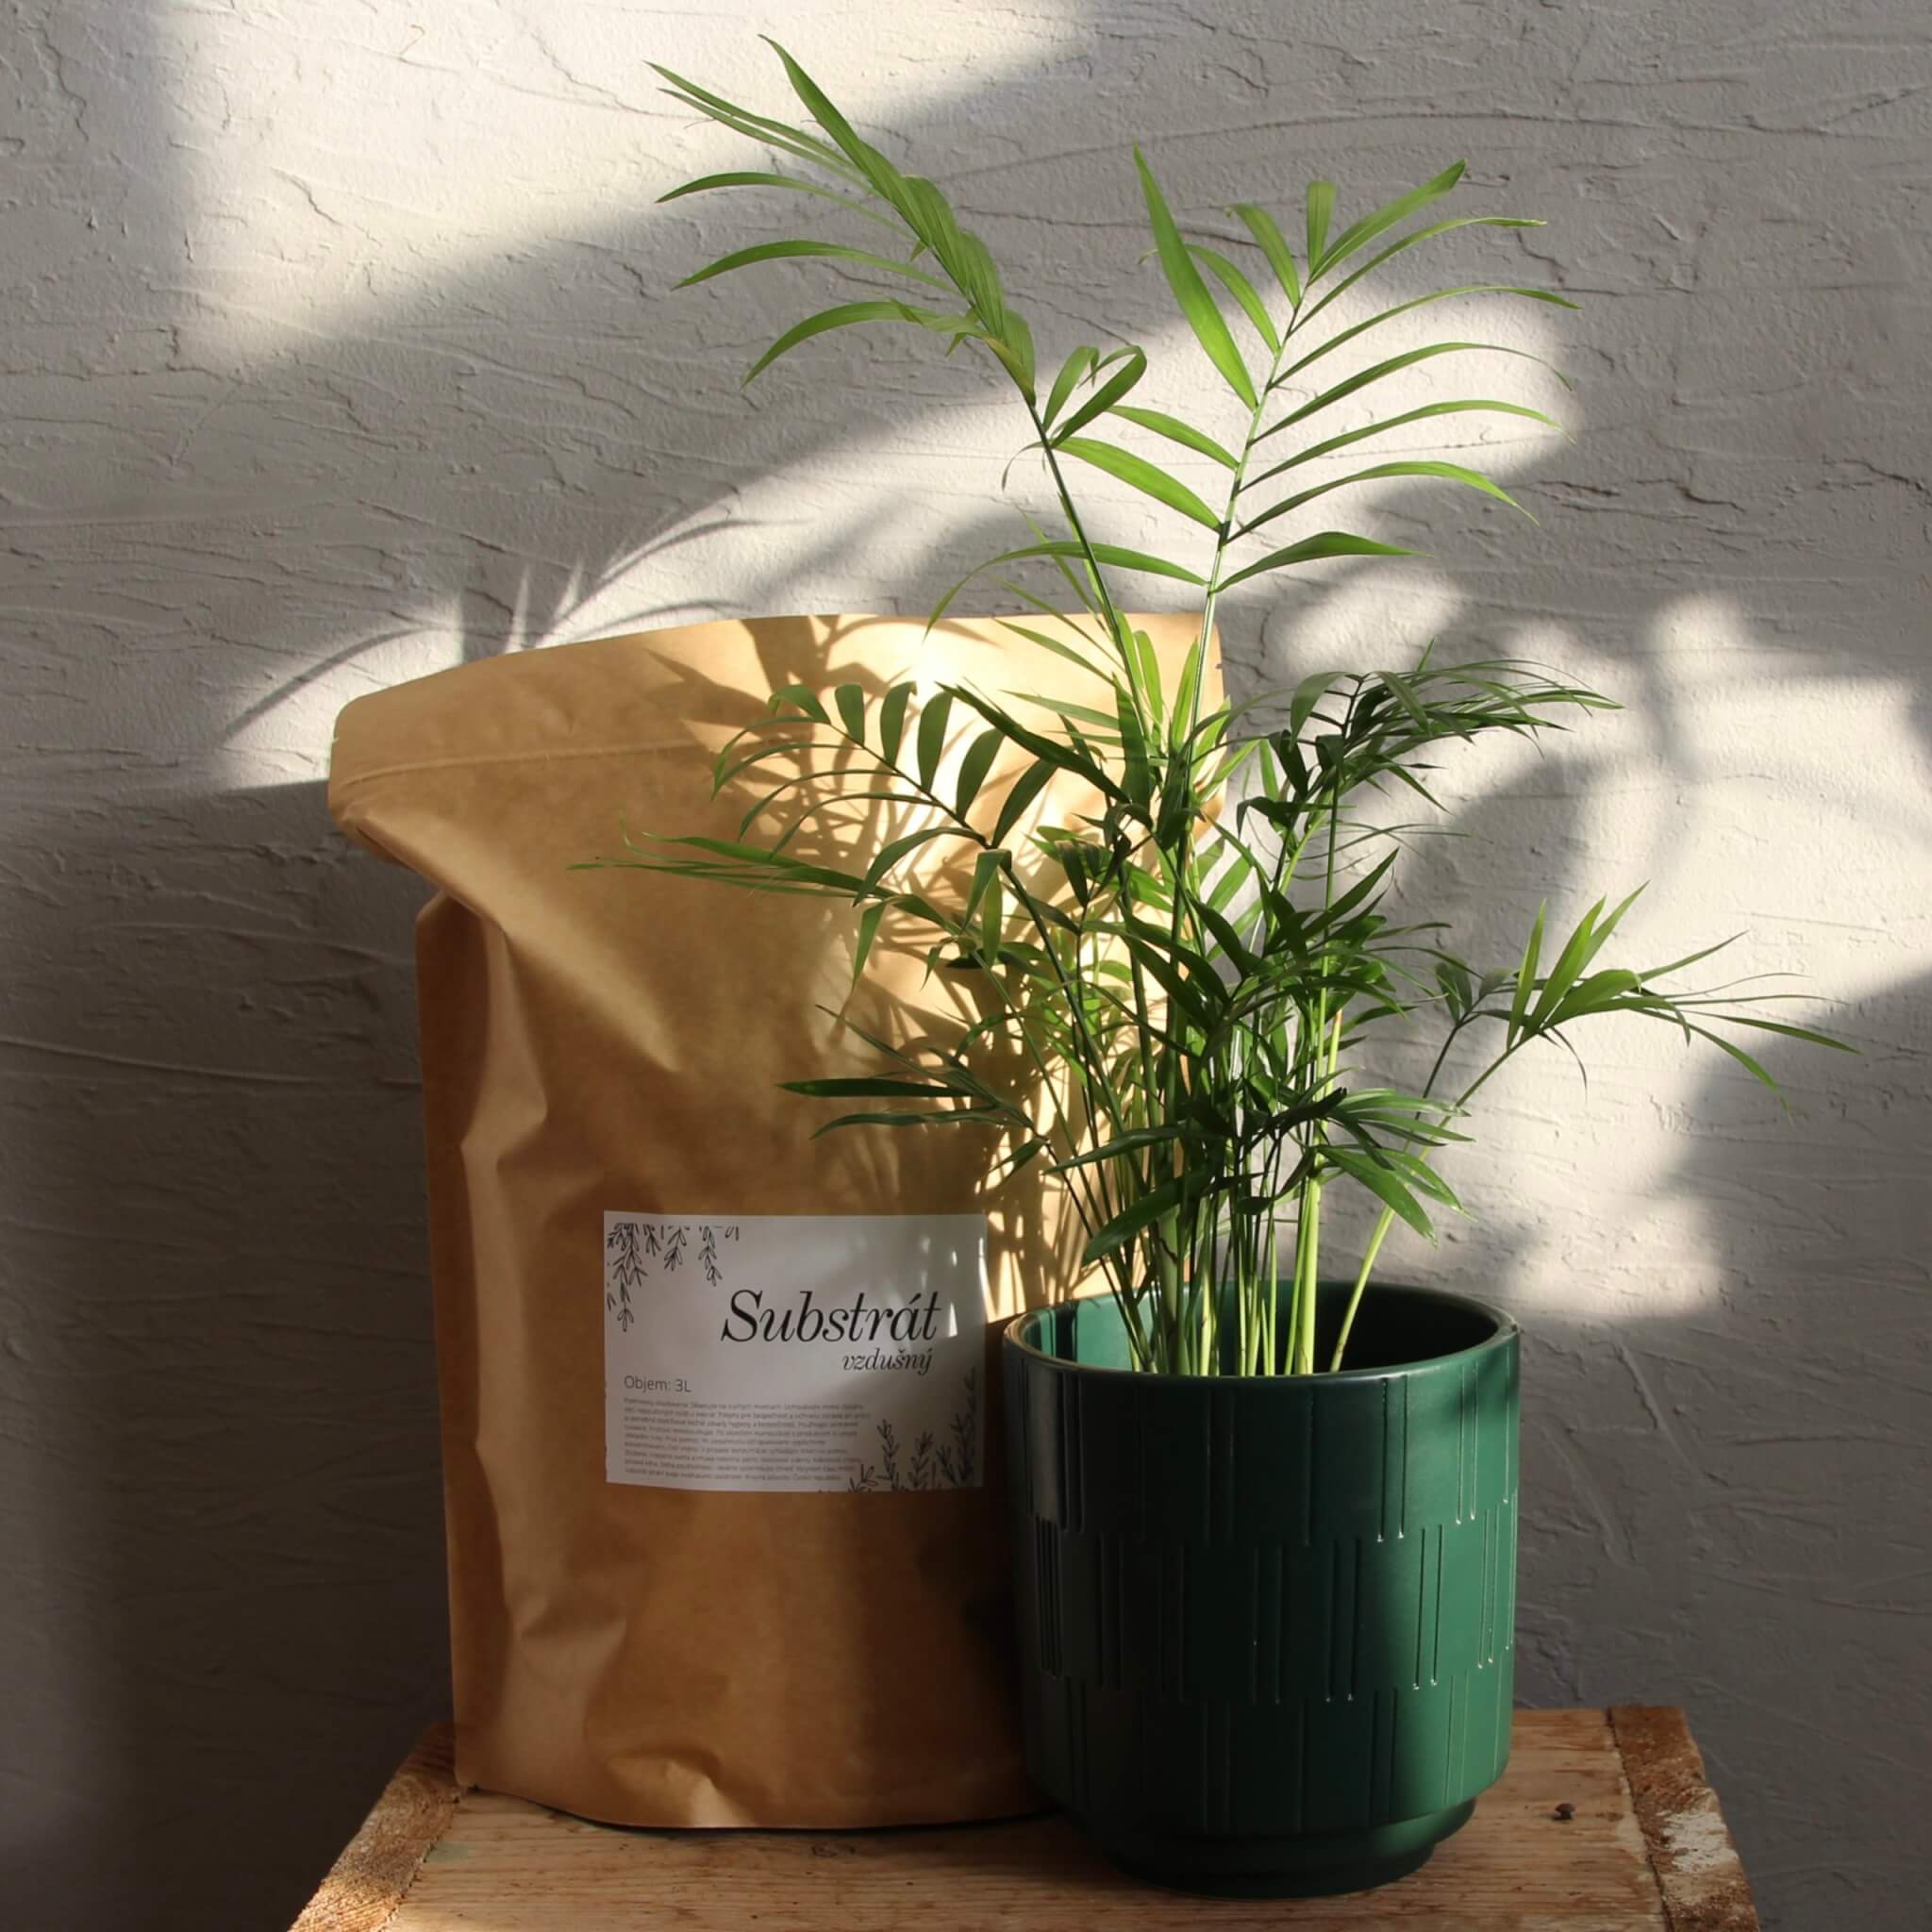 Rastlinkovo-substrat-na-izbove-rastliny-3-litre